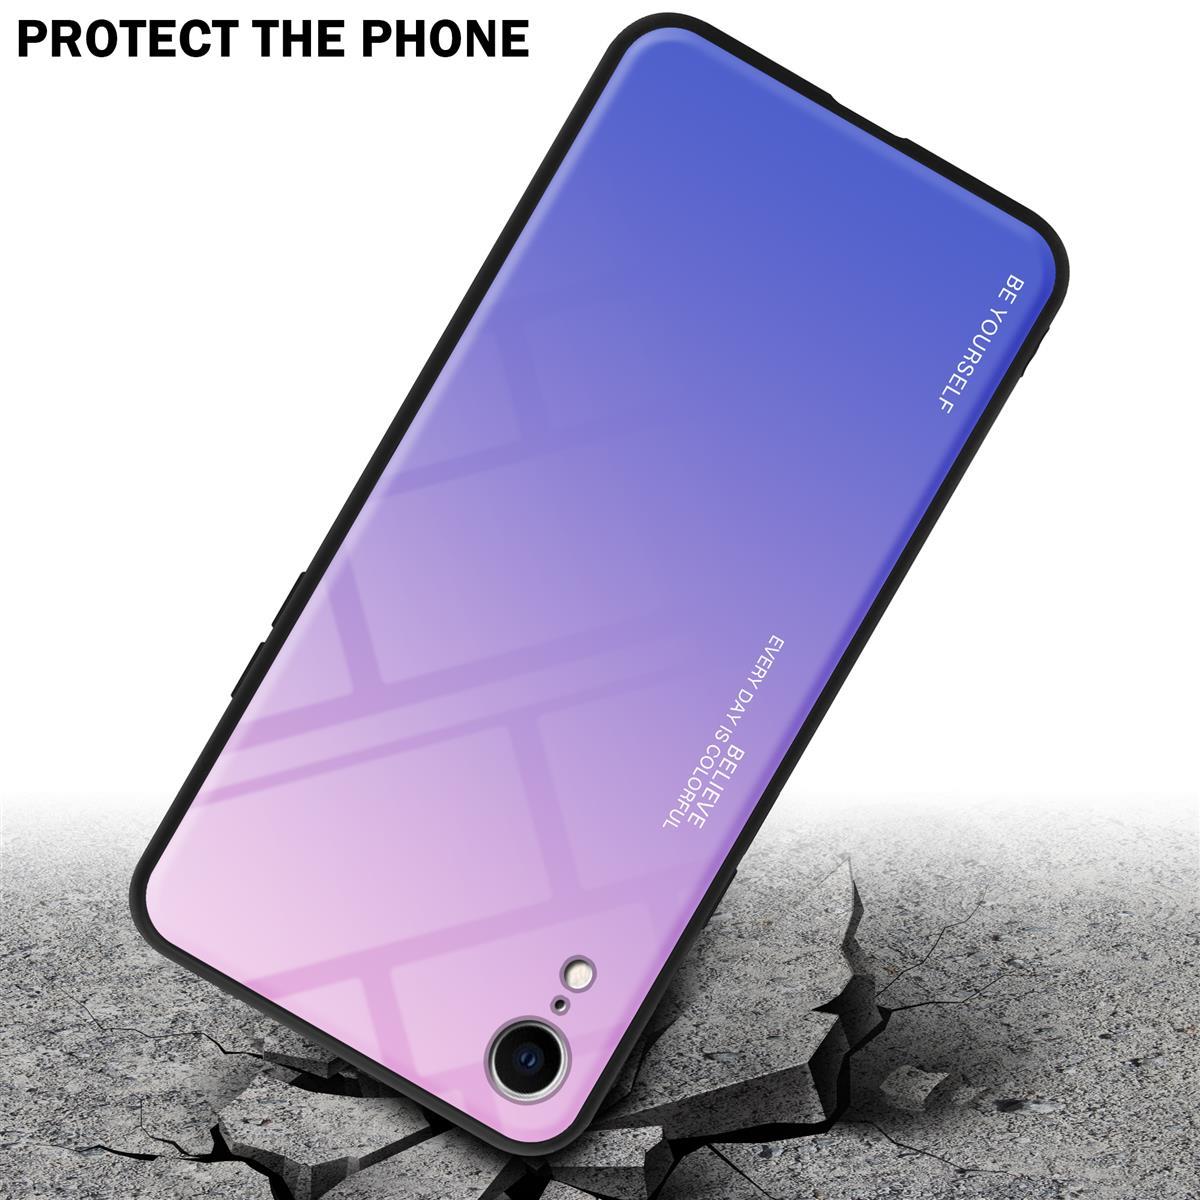 Coque pour Apple iPhone XR en ROSE - BLEU Housse de protection Étui bicolore en silicone TPU et dos en verre trempé